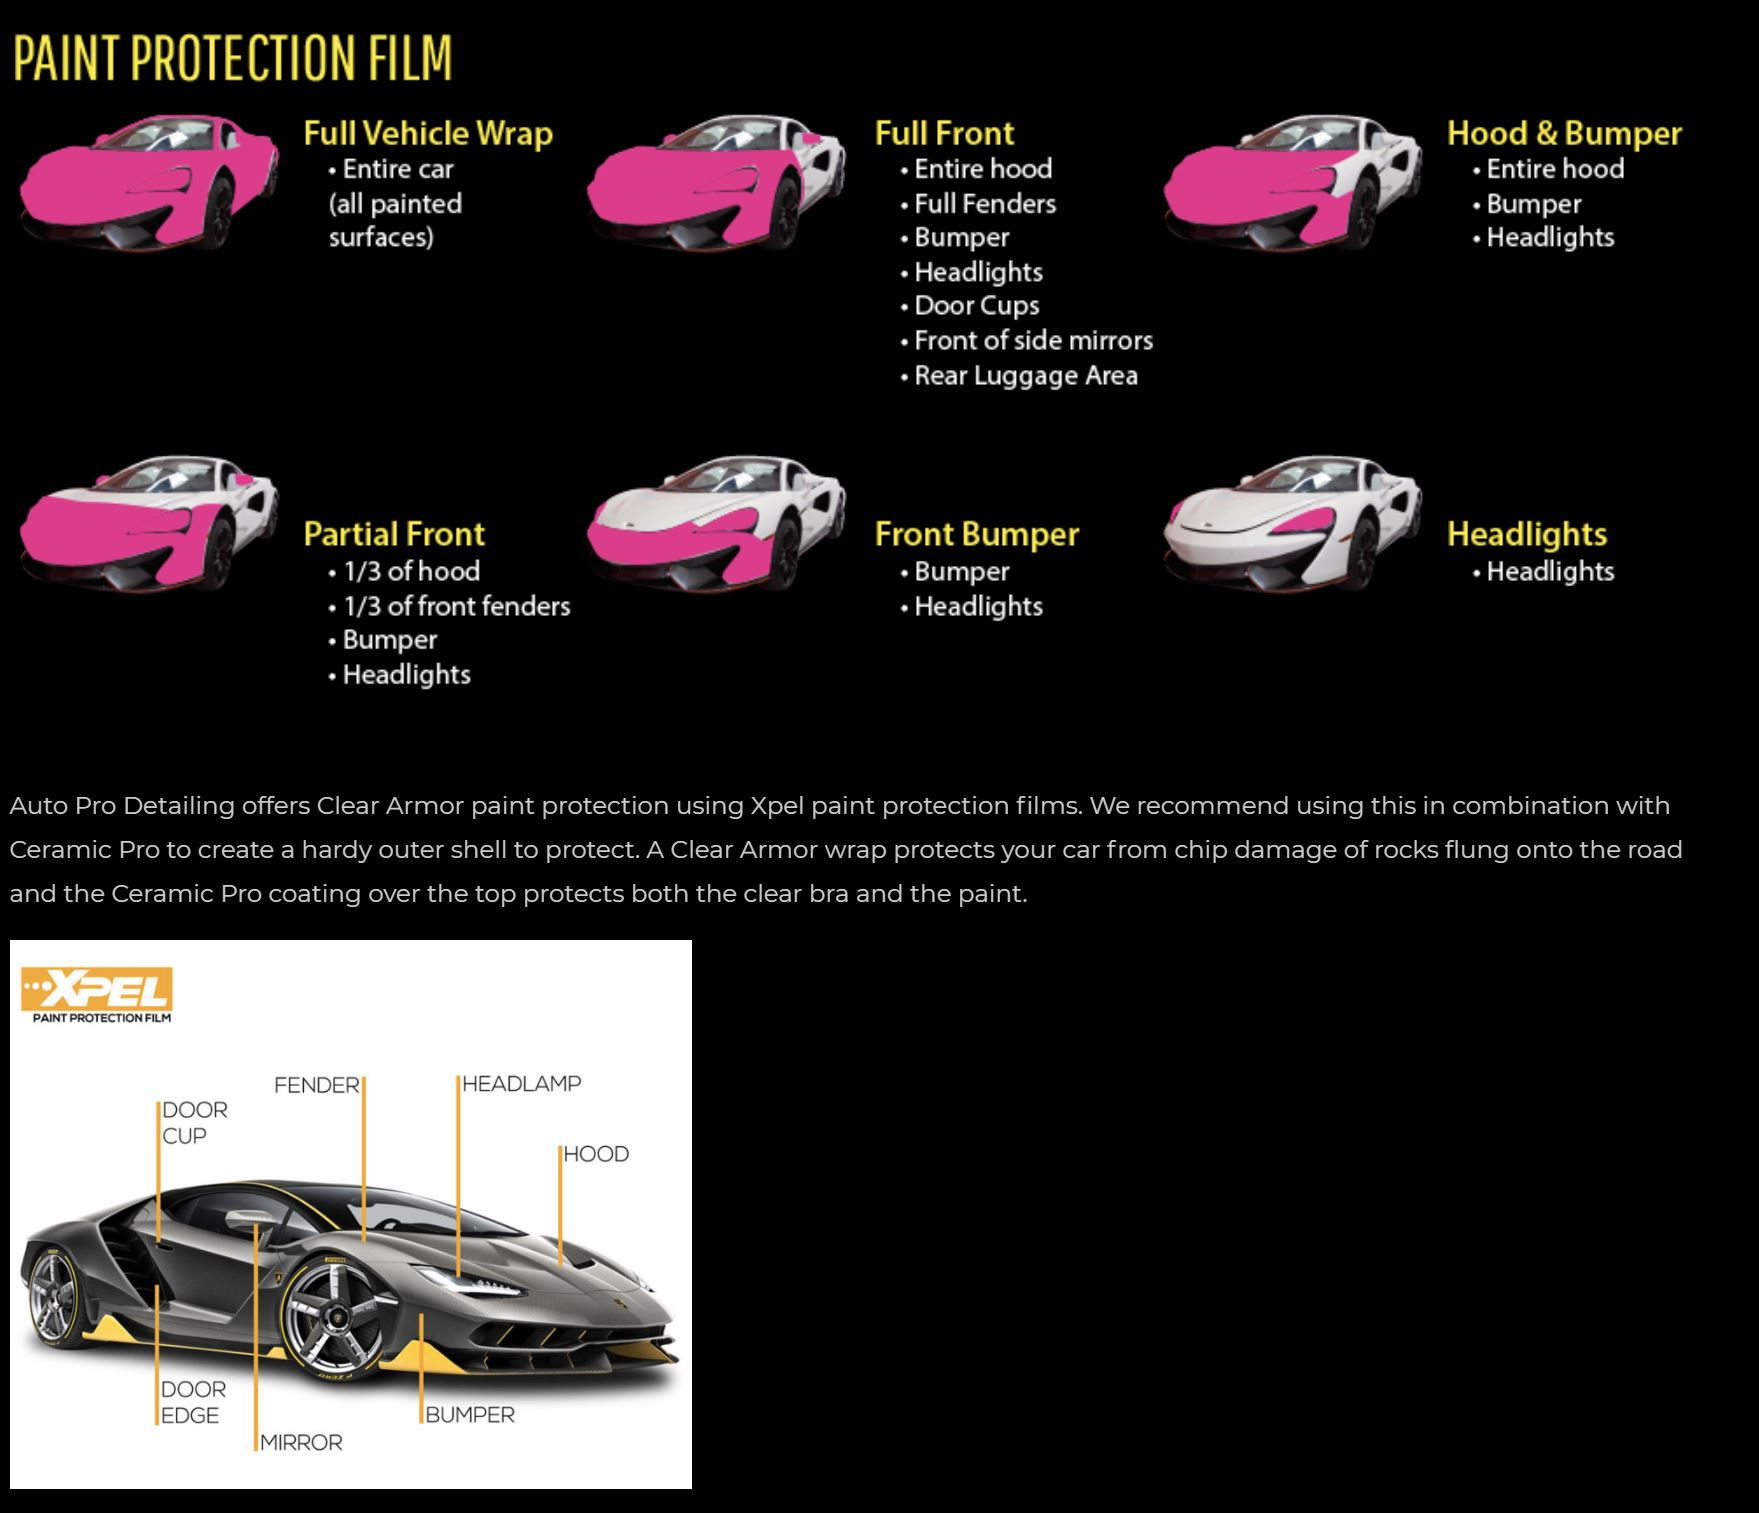 Paint Protection Film (PPF) is that worth it? - ClubLexus - Lexus